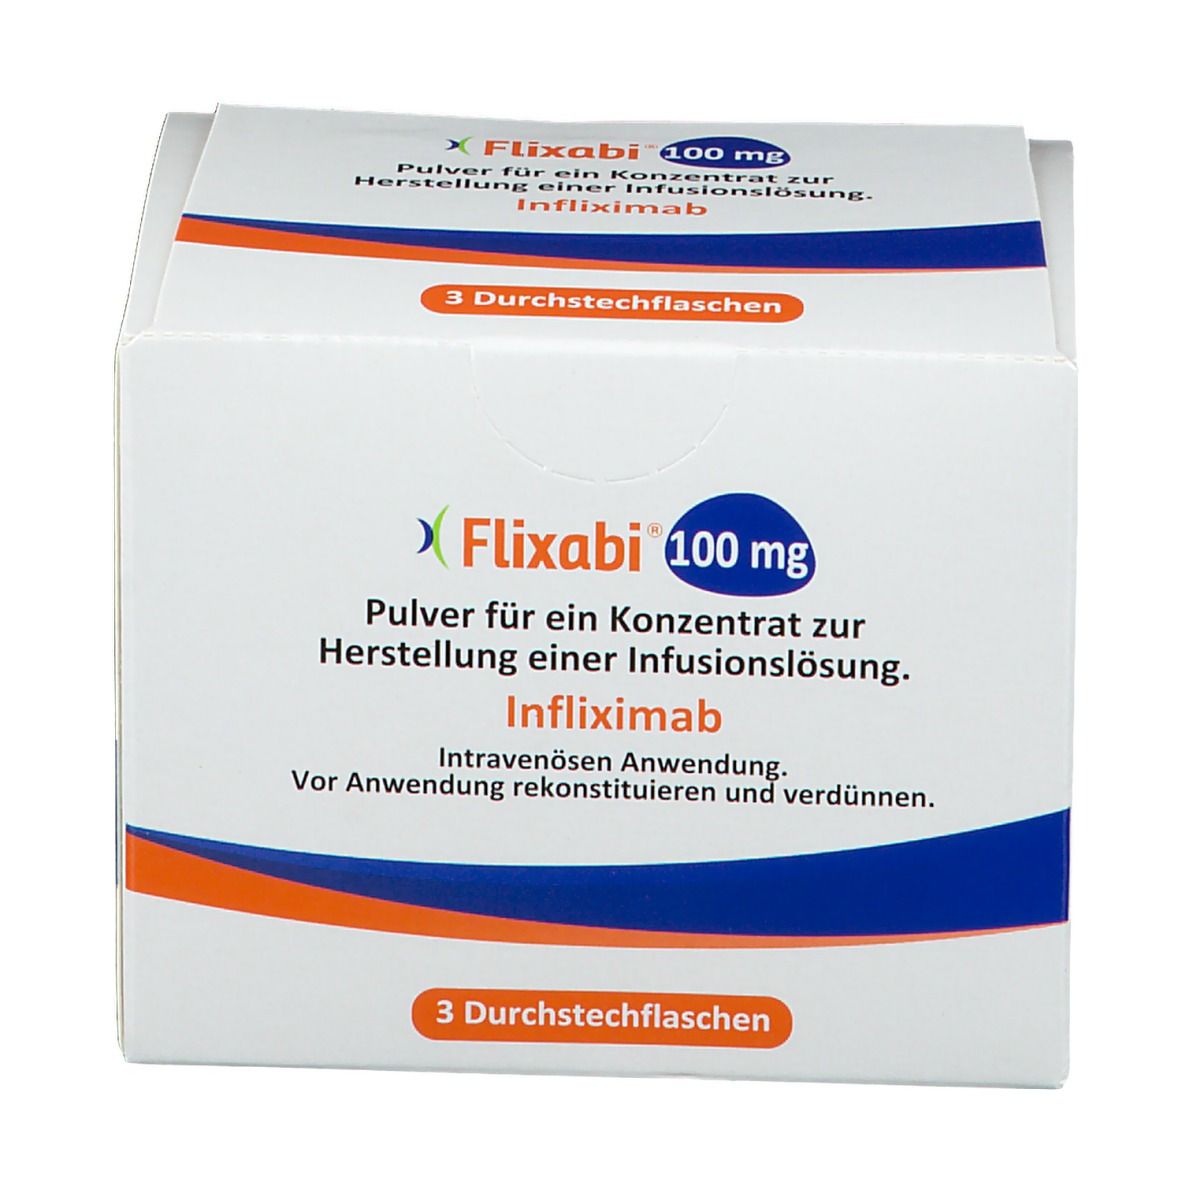 Flixabi® 100 mg